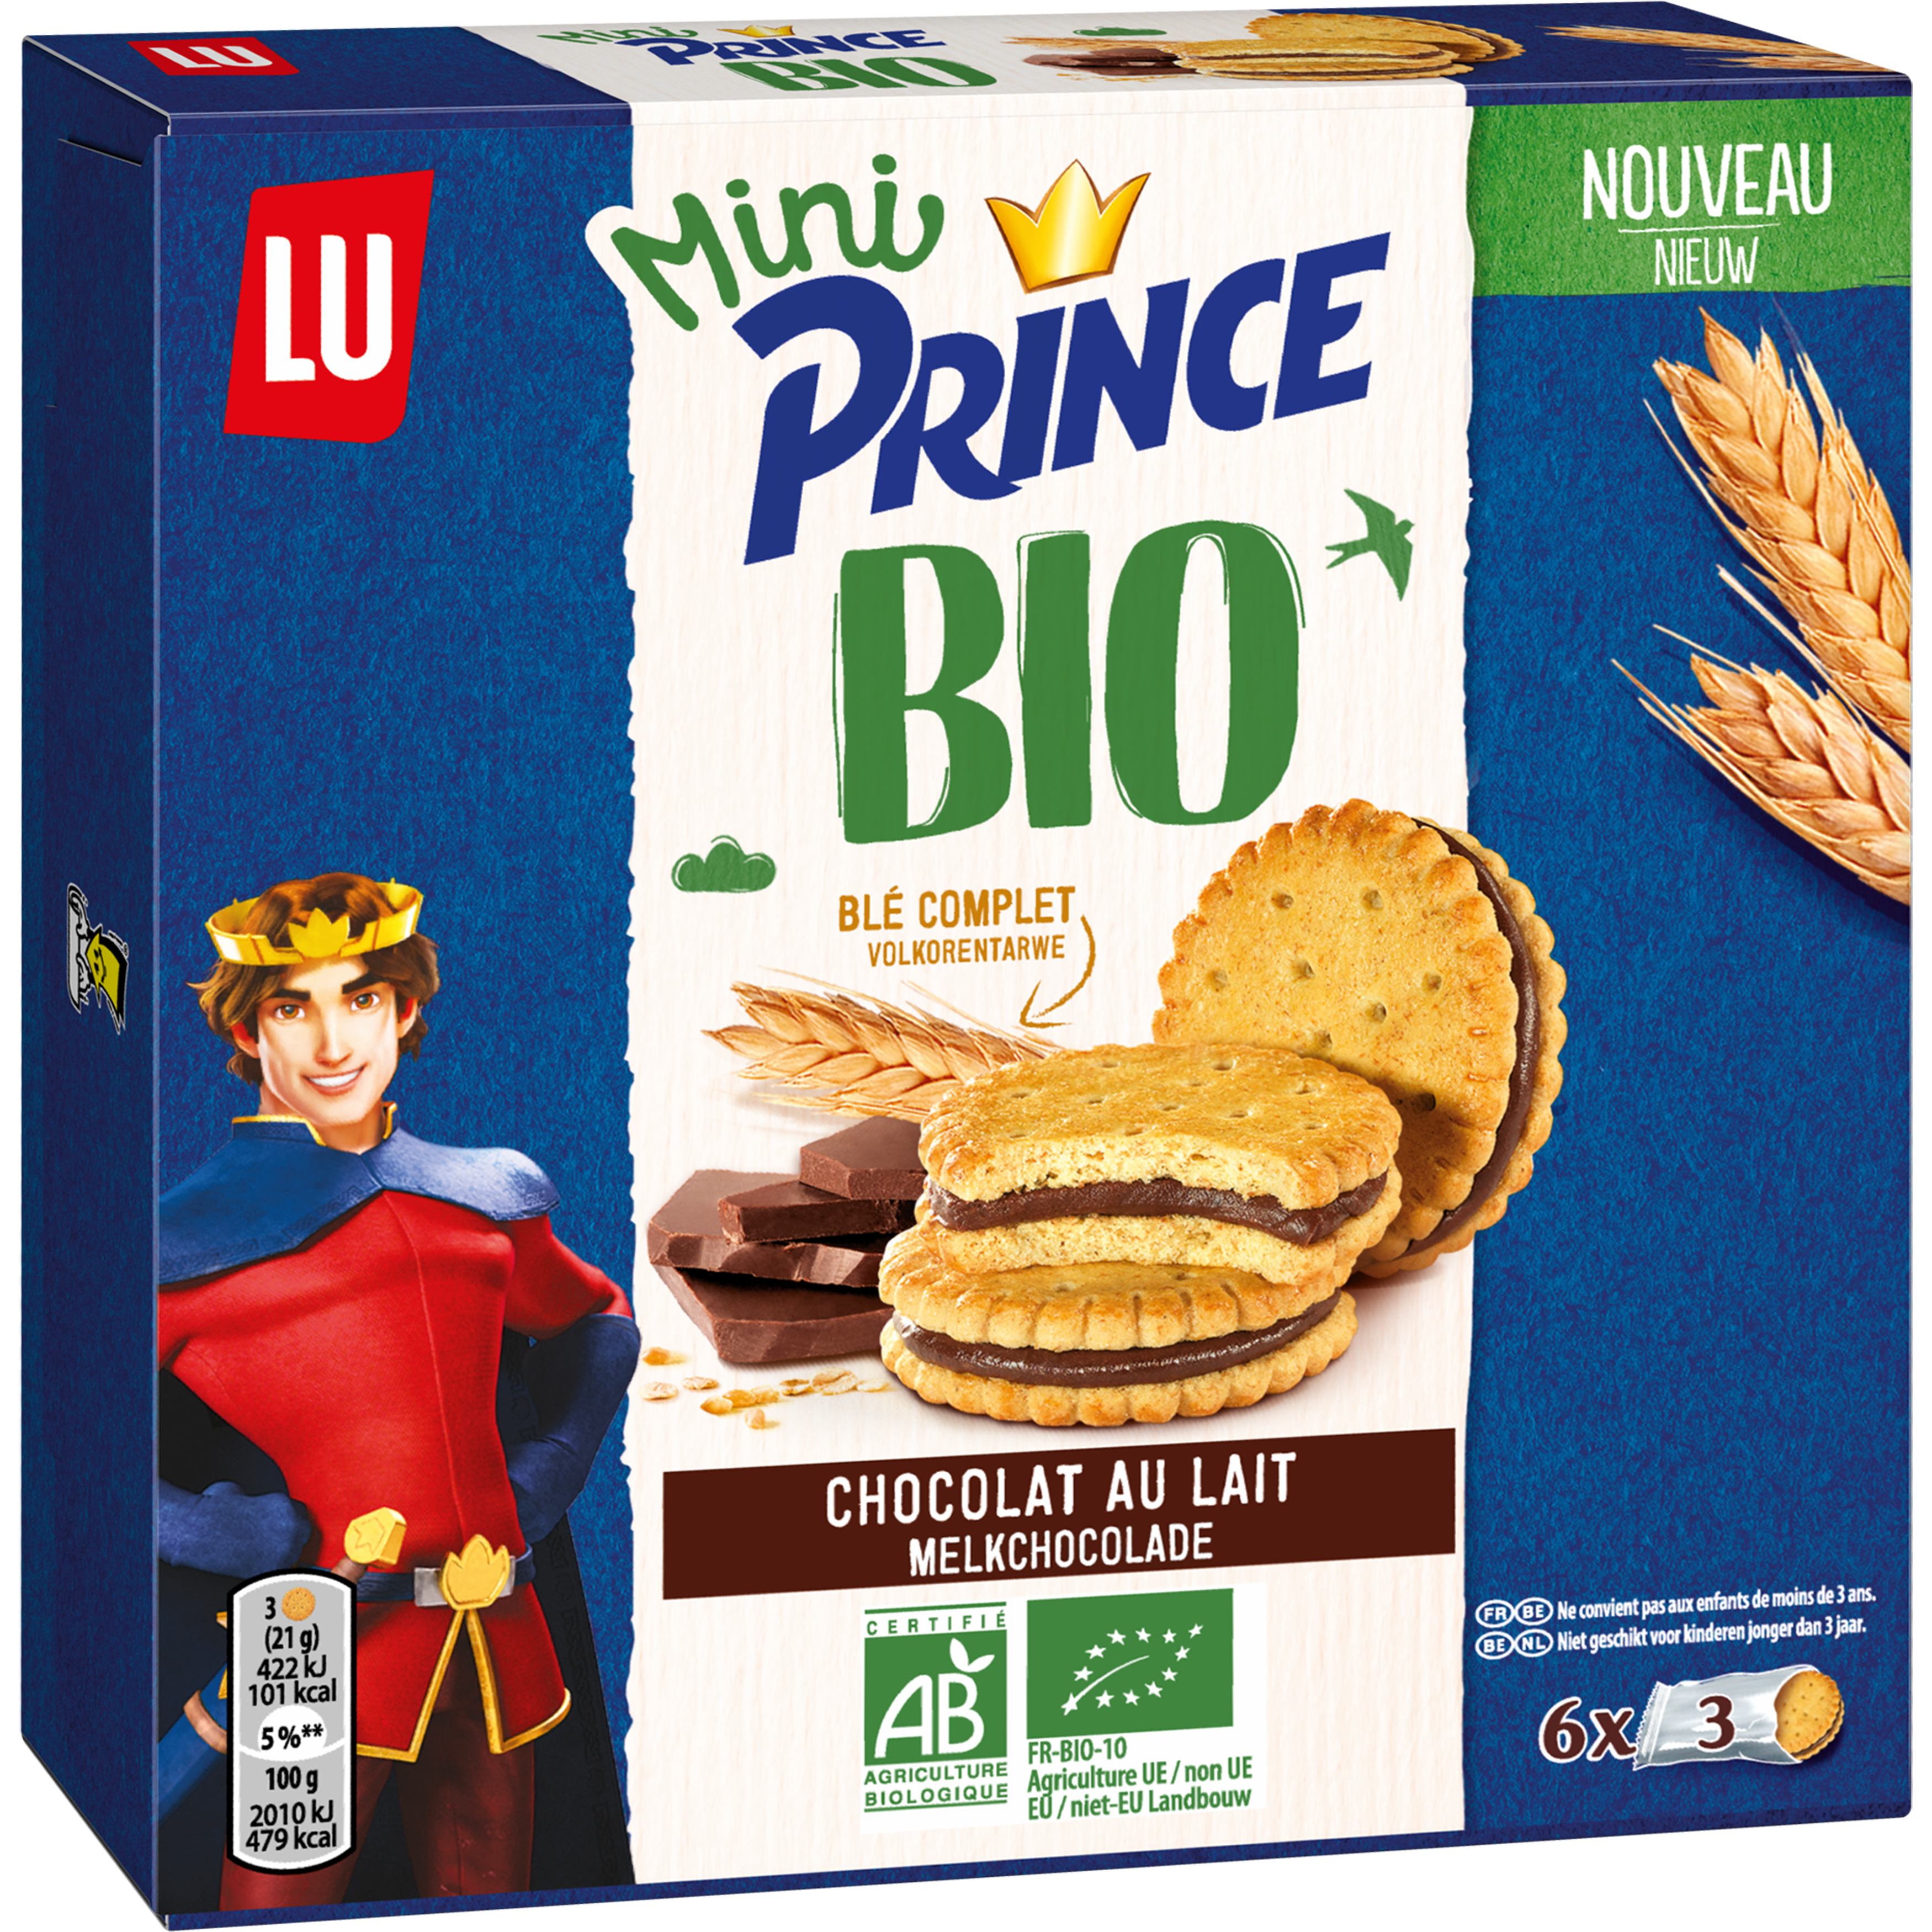 Mini biscuit Prince personnalisé emballage transparent